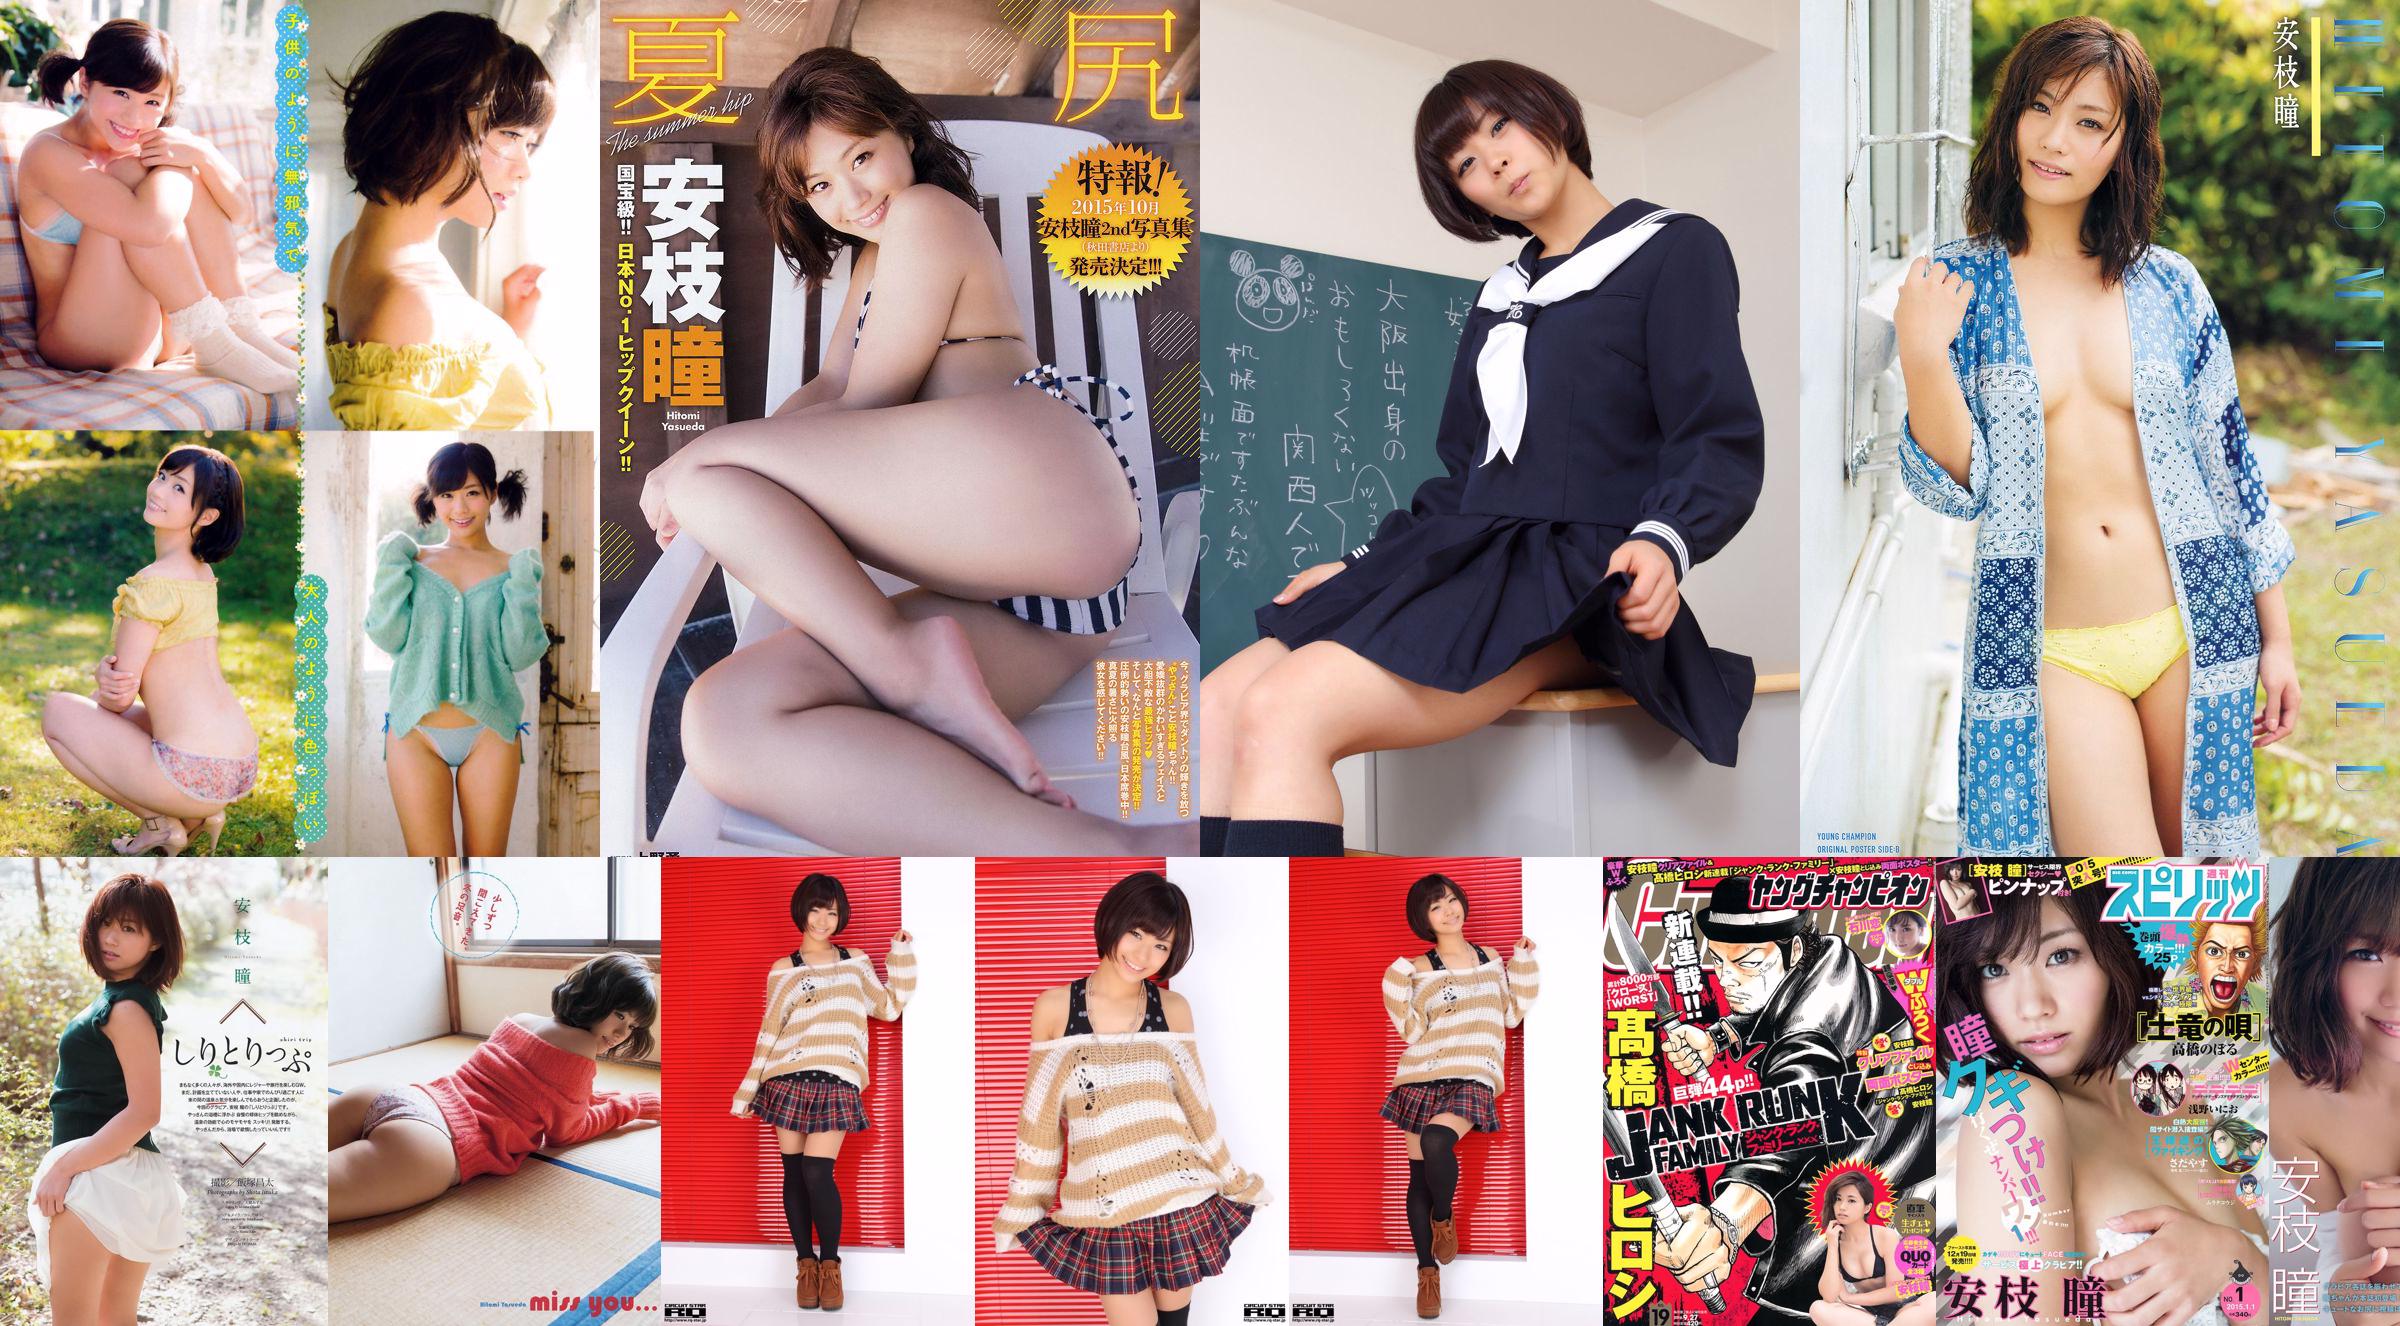 [Young Champion] Hitomi Yasuda and Okada Suriyo 2015 No.22 Photo Magazine No.94d5fa Page 1